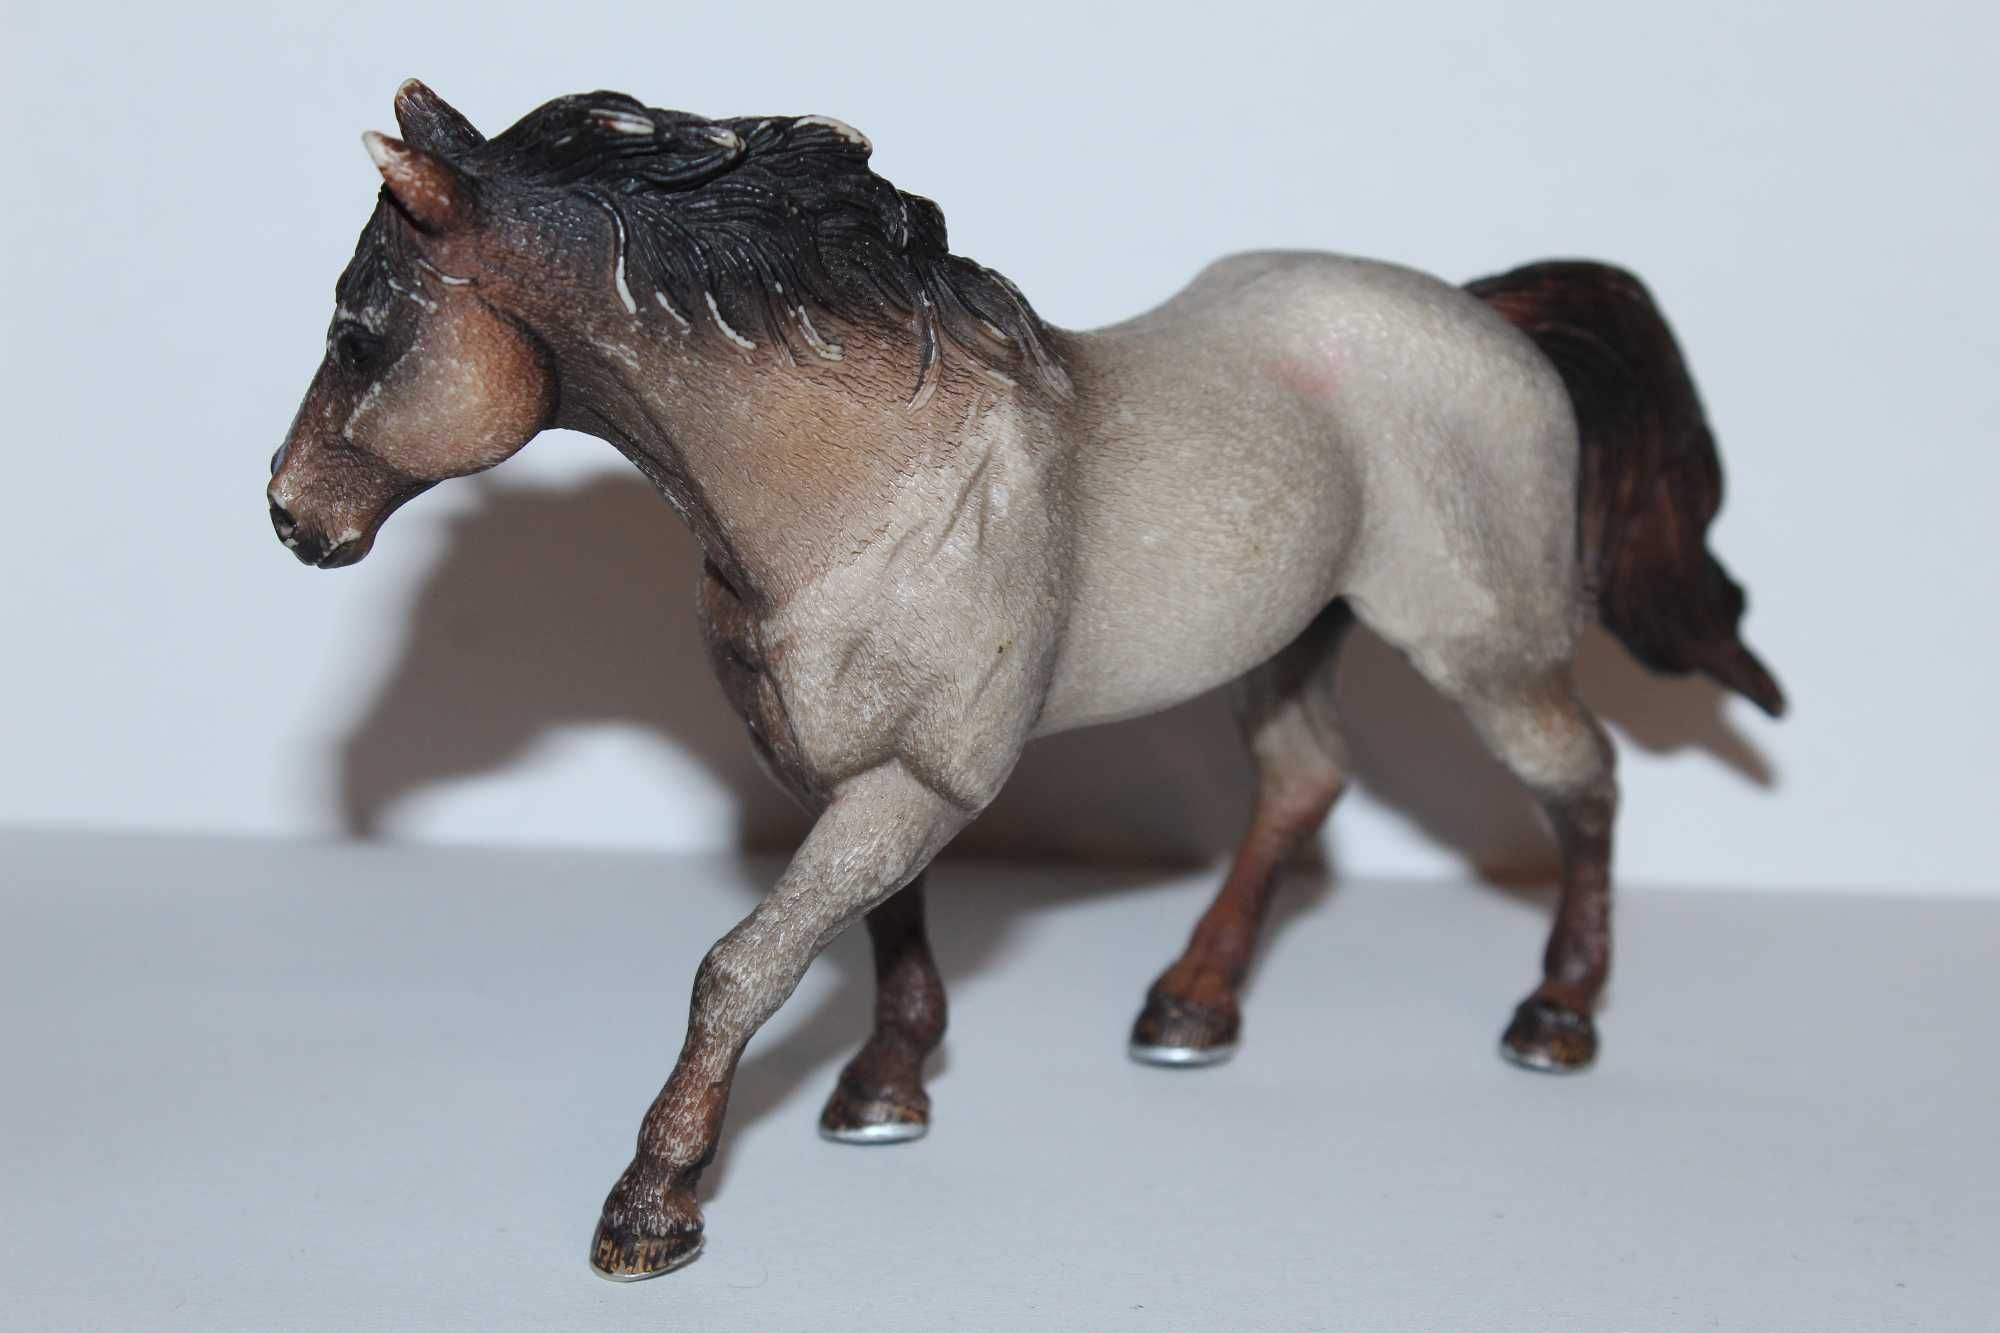 Schleich - ogier Quater Horse, wycofany ze sprzedaży